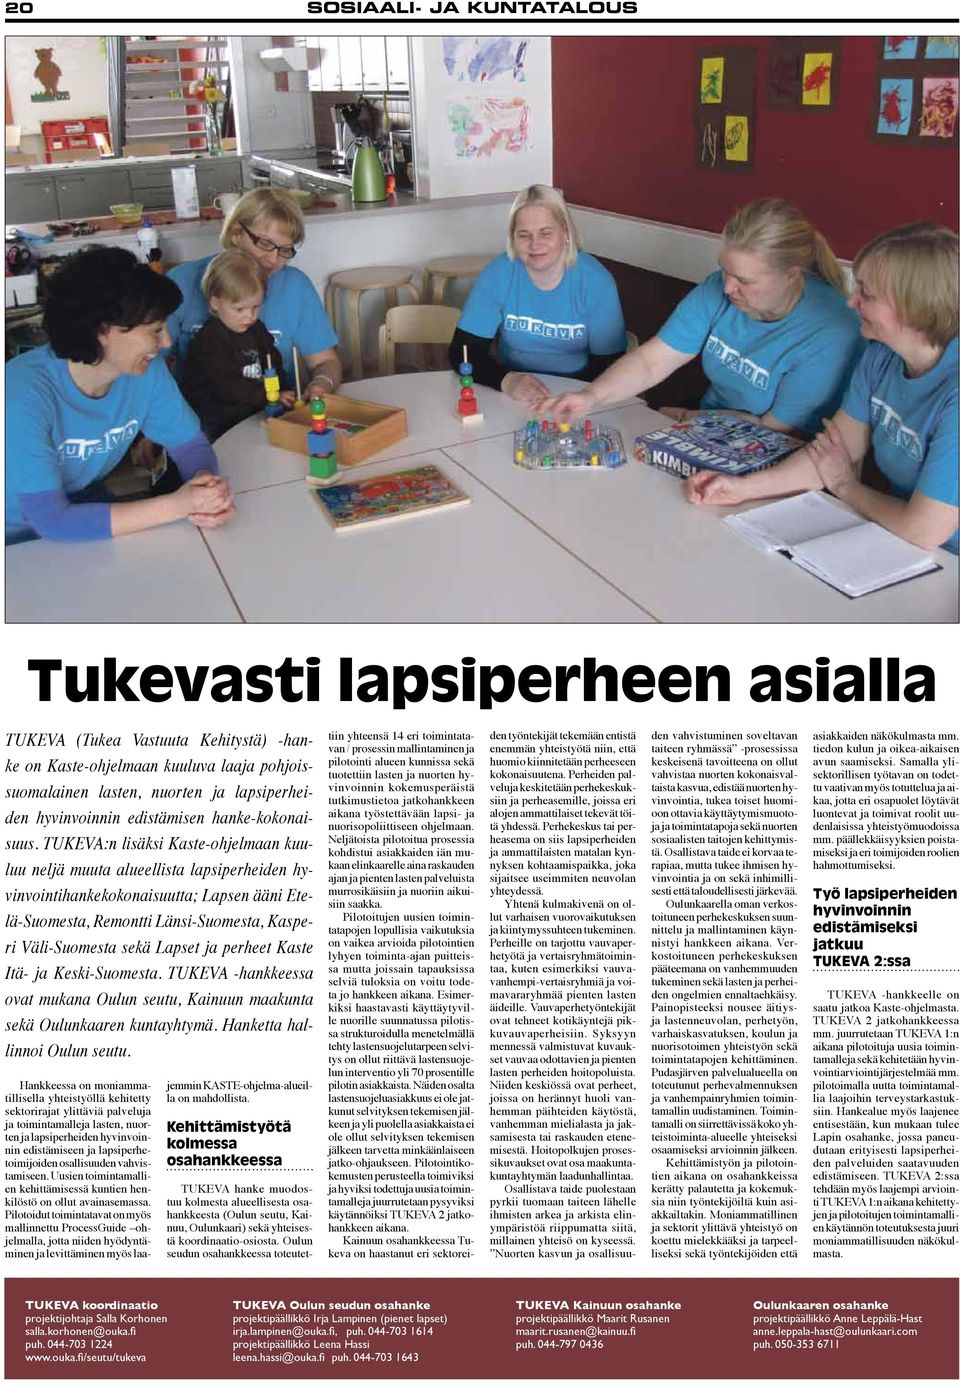 TUKEVA:n lisäksi Kaste-ohjelmaan kuuluu neljä muuta alueellista lapsiperheiden hyvinvointihankekokonaisuutta; Lapsen ääni Etelä-Suomesta, Remontti Länsi-Suomesta, Kasperi Väli-Suomesta sekä Lapset ja